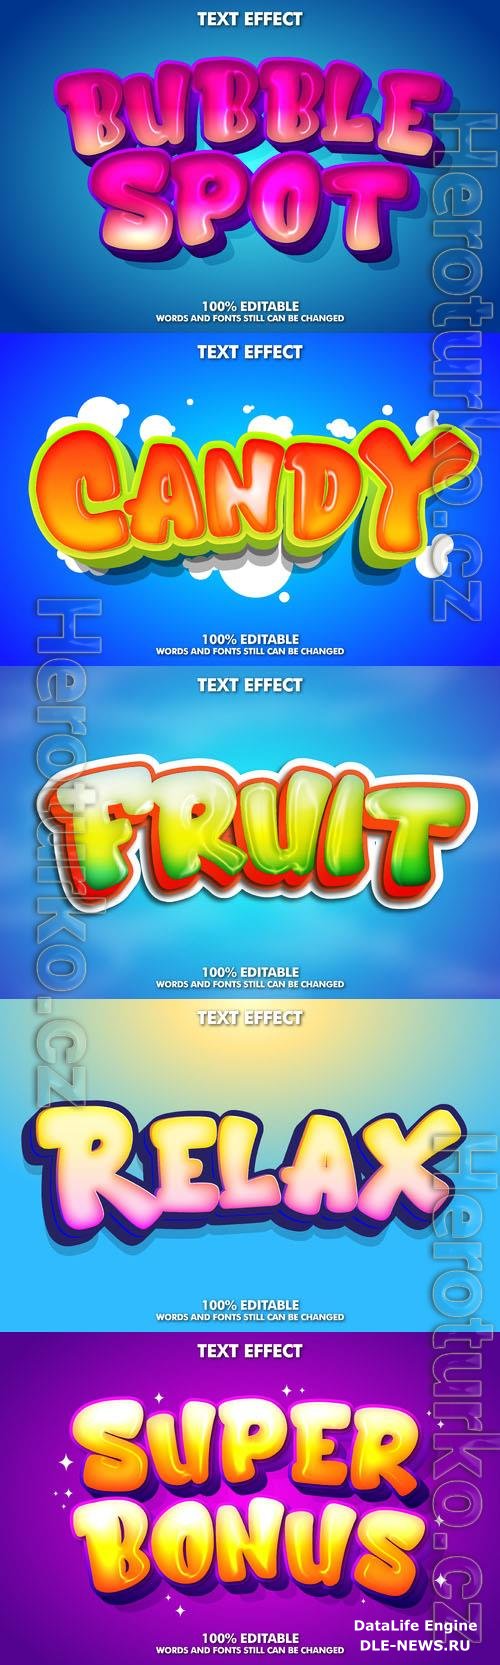 Vector 3d text editable, text effect font design
 vol 96